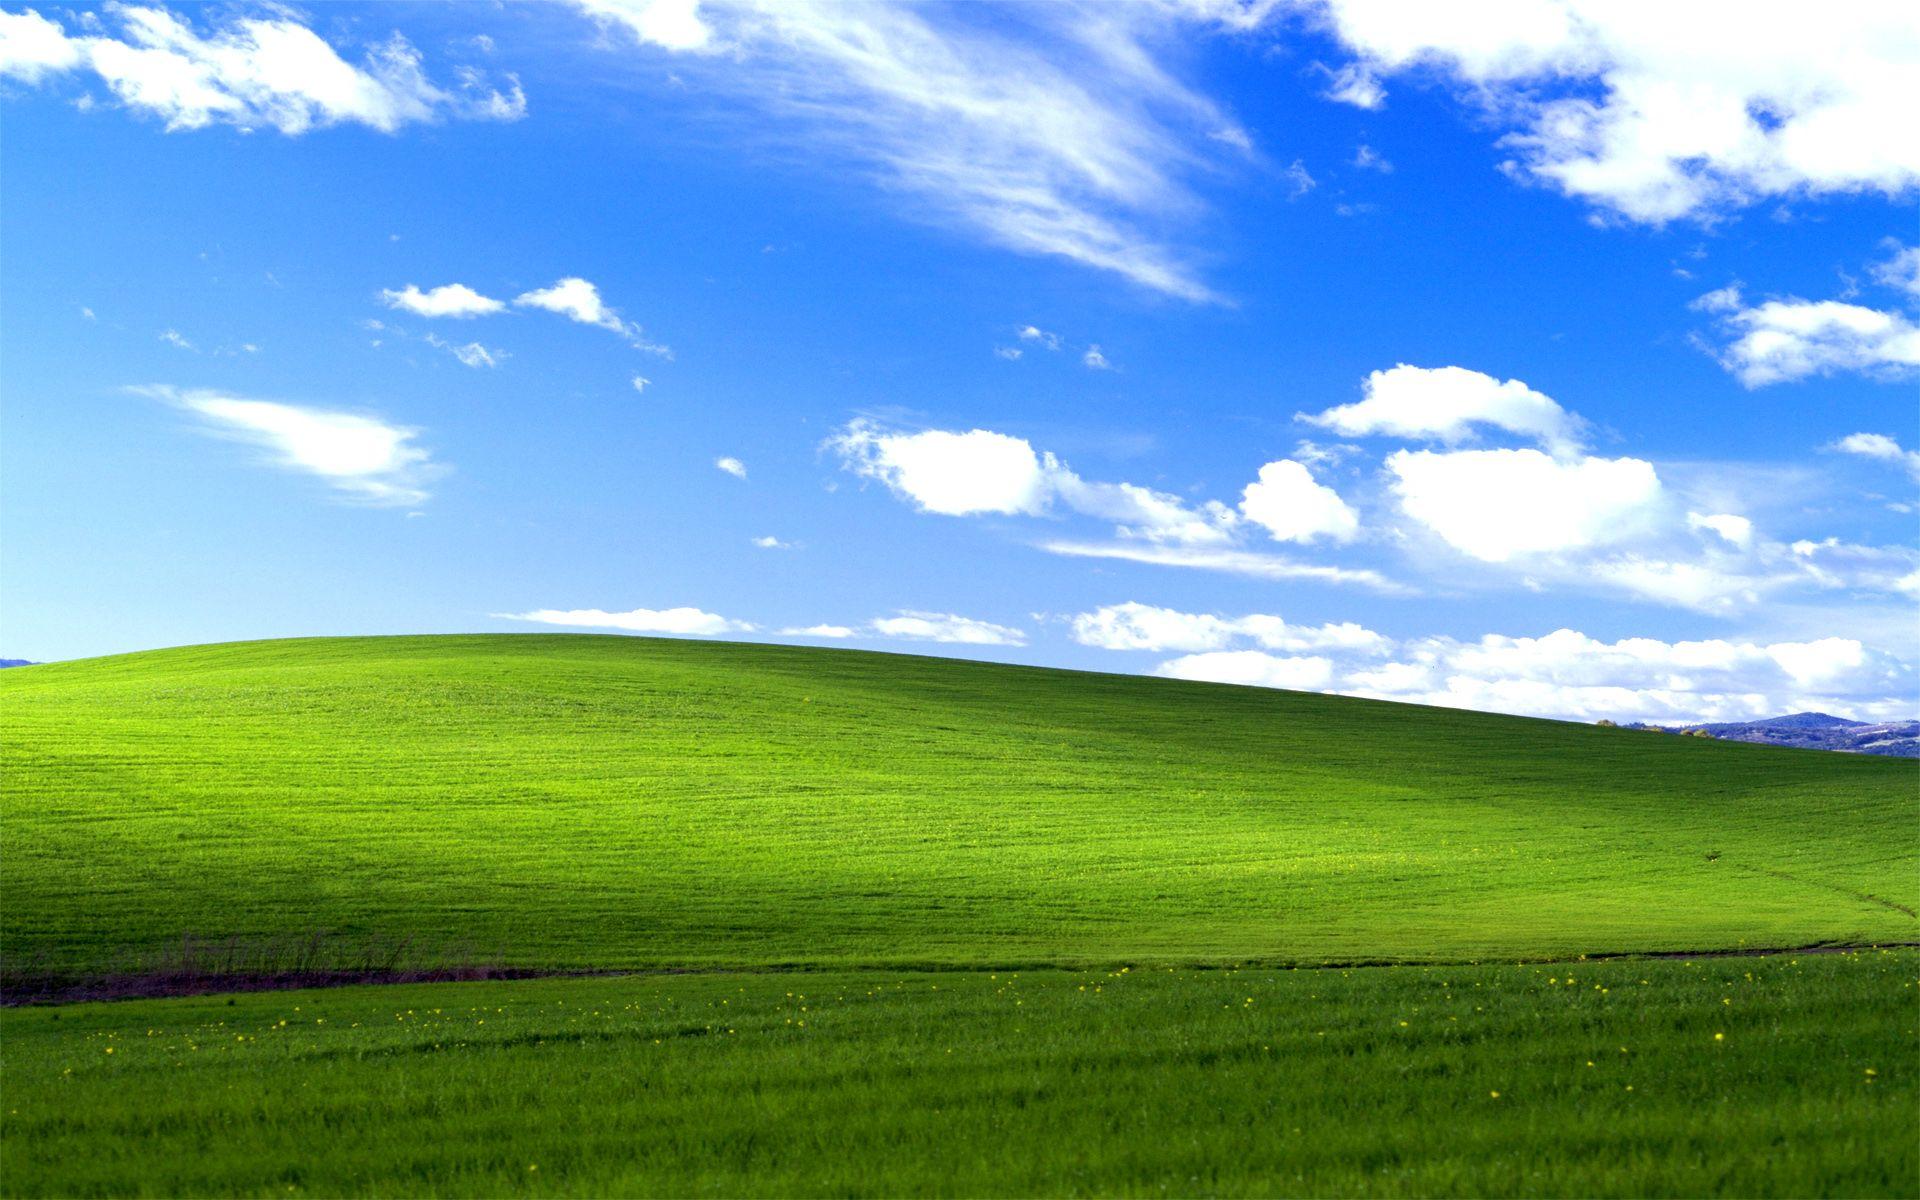 Nếu bạn đang tìm kiếm các hình nền Windows XP độc đáo và đẹp mắt nhất, hãy đến với chúng tôi và tận hưởng những khoảnh khắc thư giãn tuyệt vời.